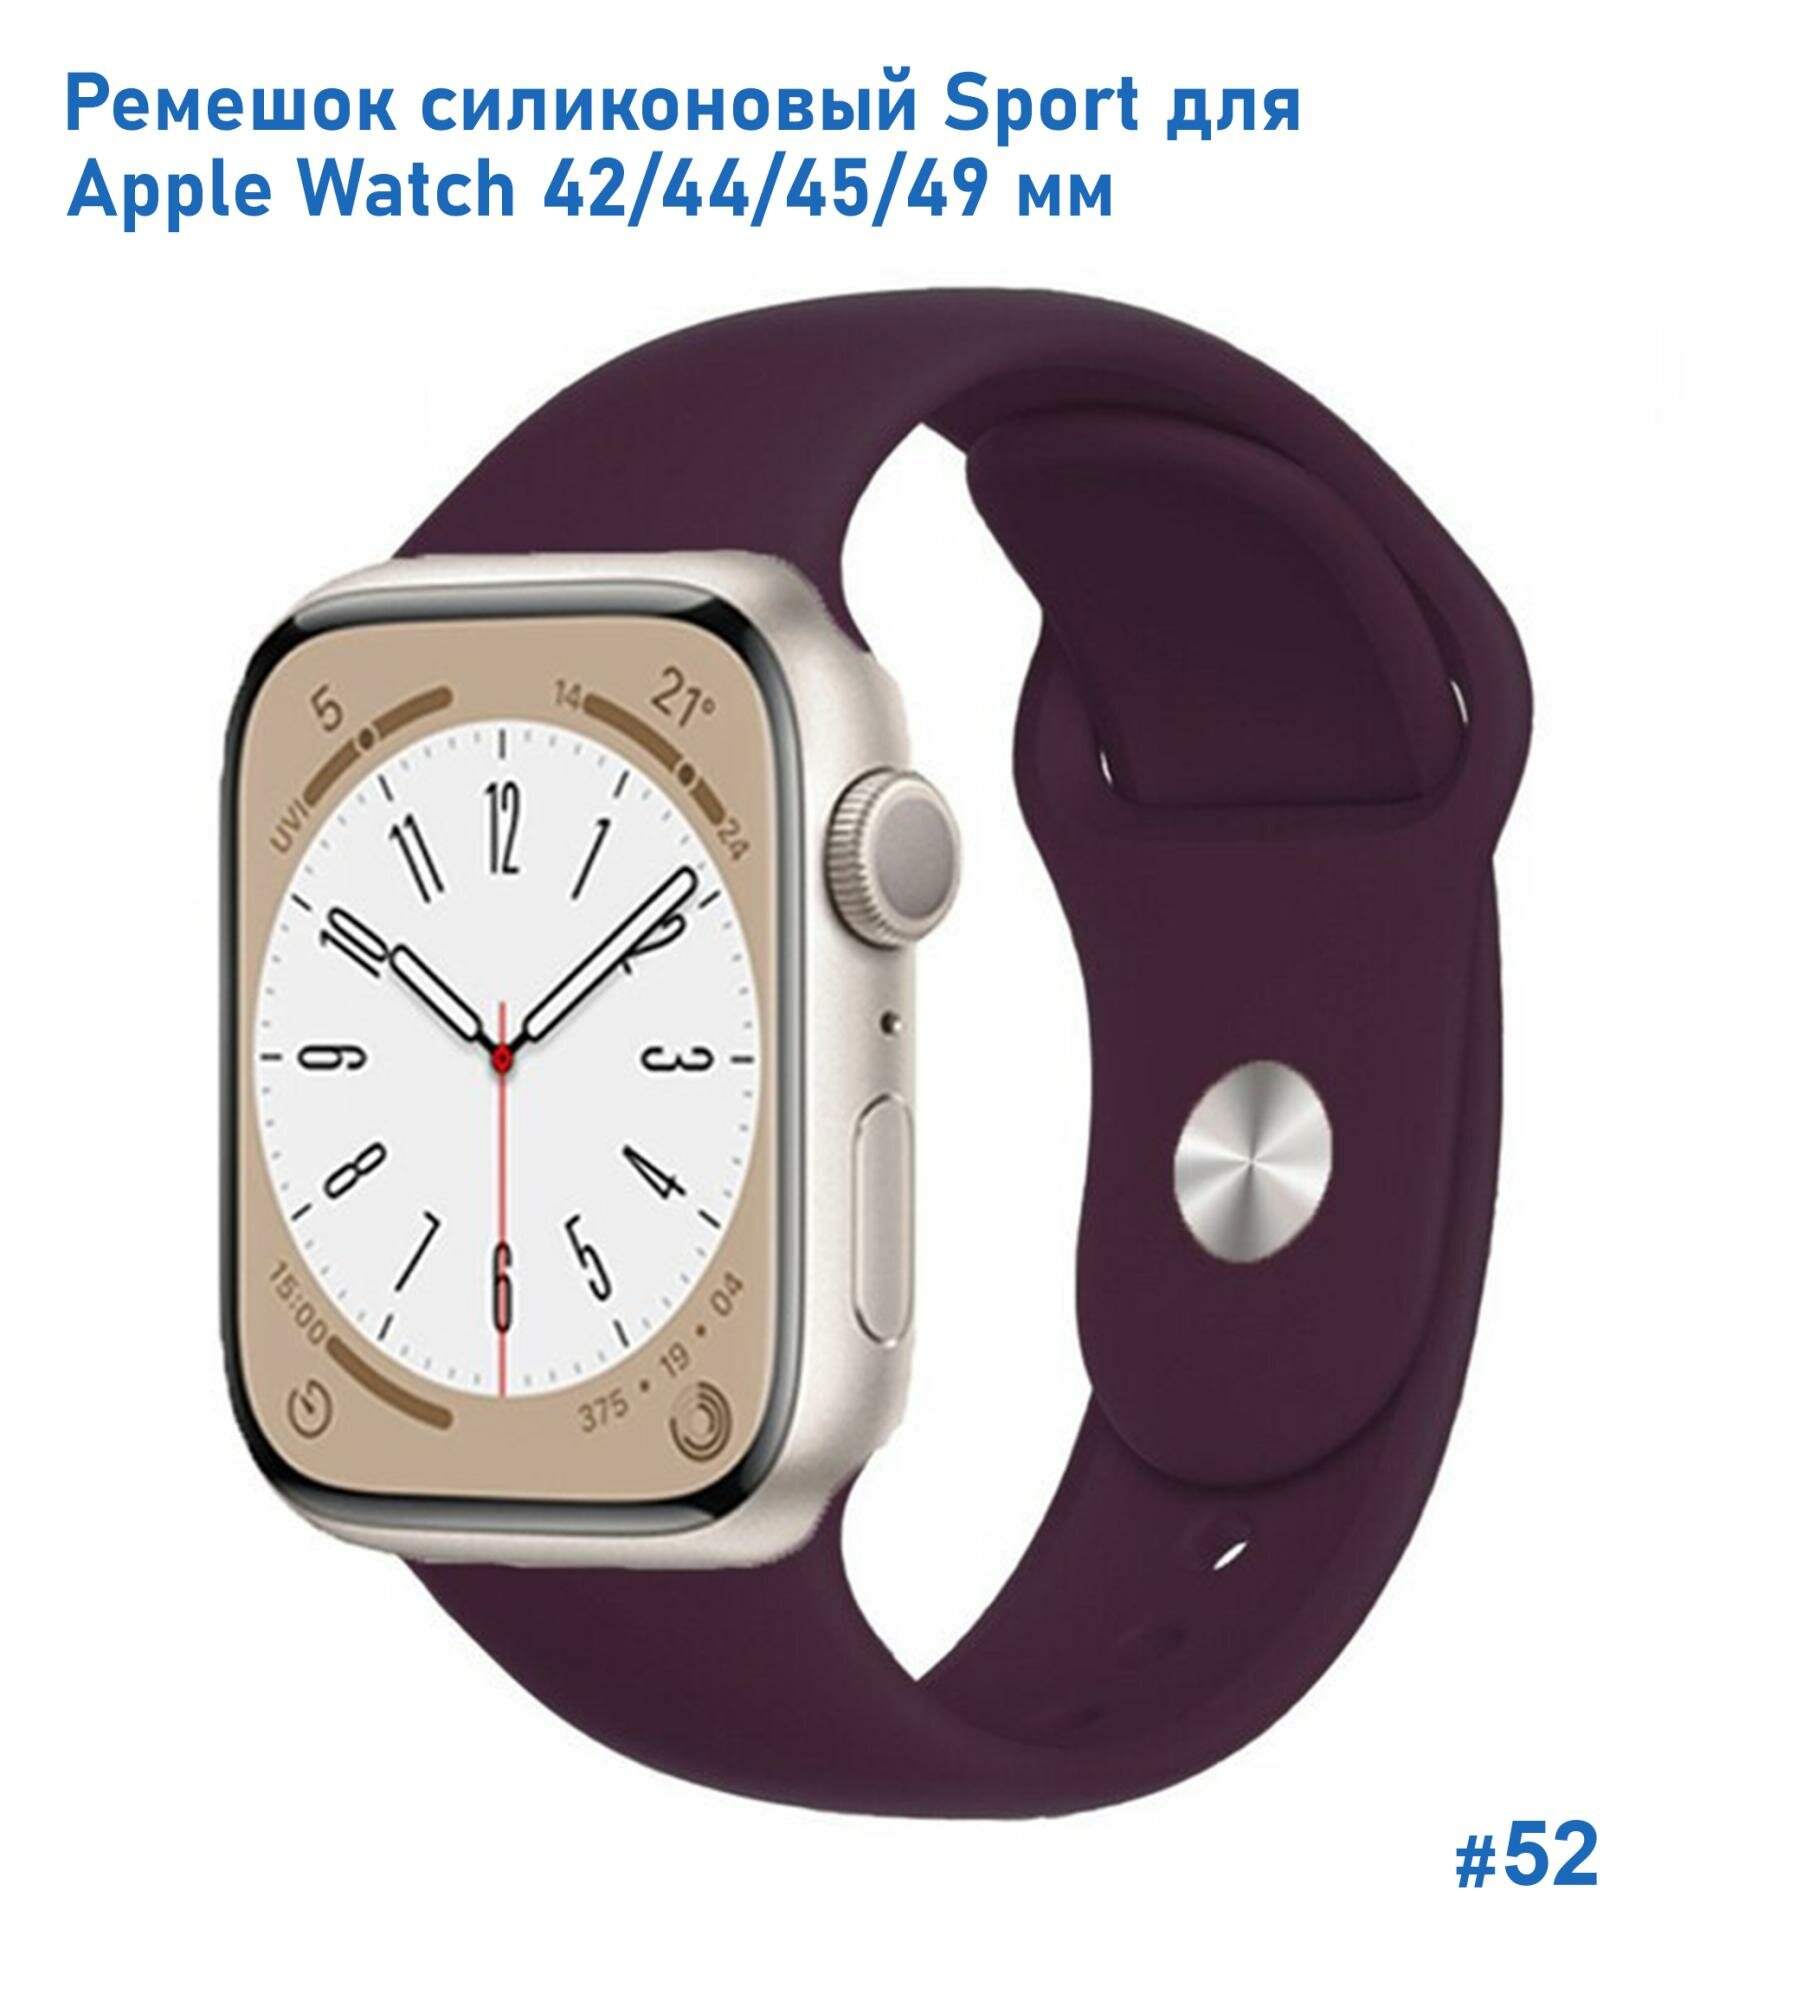 Ремешок силиконовый Sport для Apple Watch 42/44/45/49 мм, на кнопке, бордовый (52)